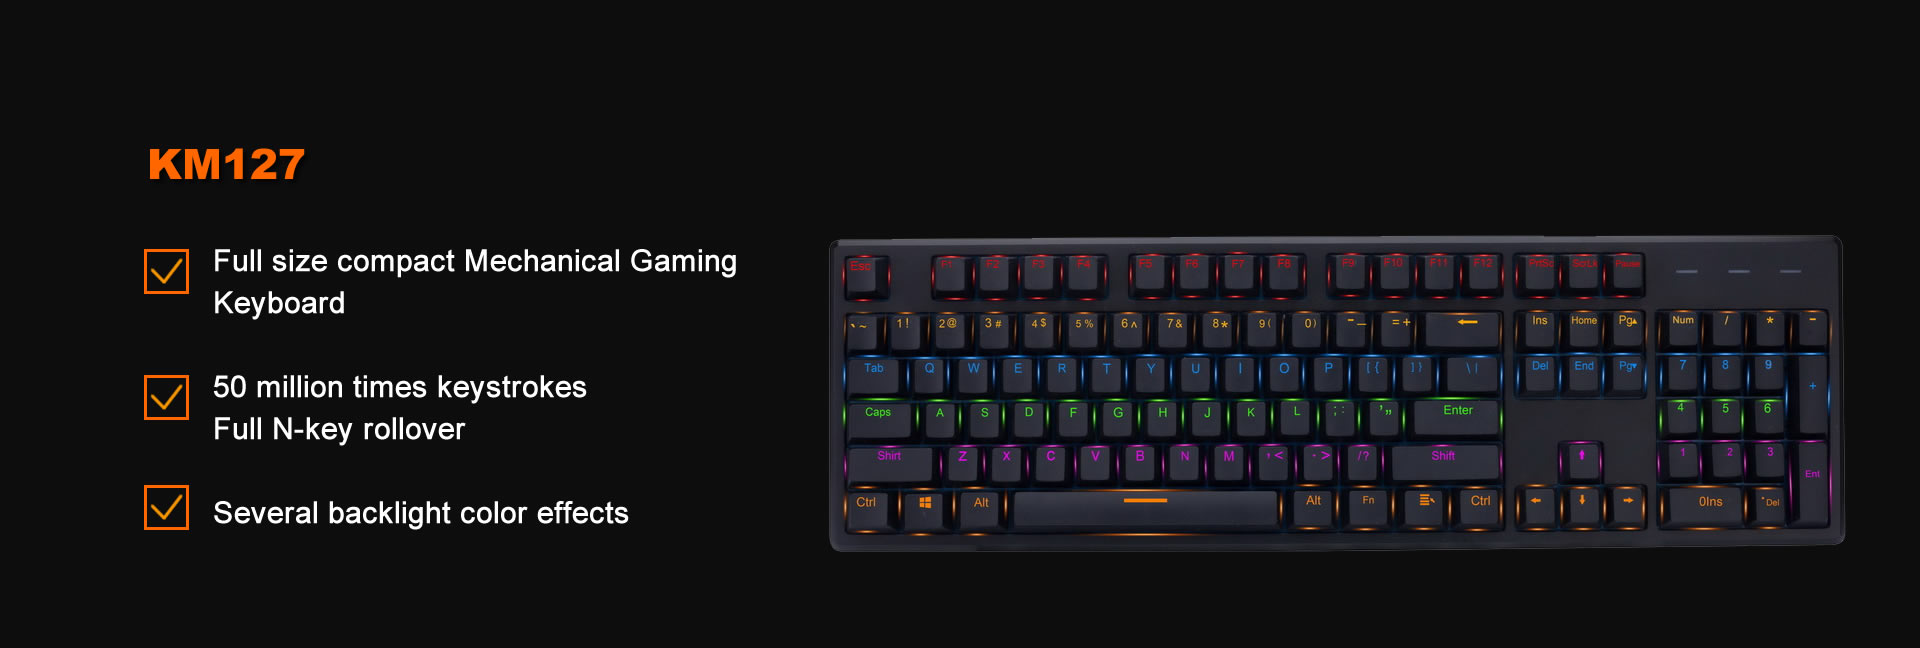 KM127 Gaming Mechanical Keyboard